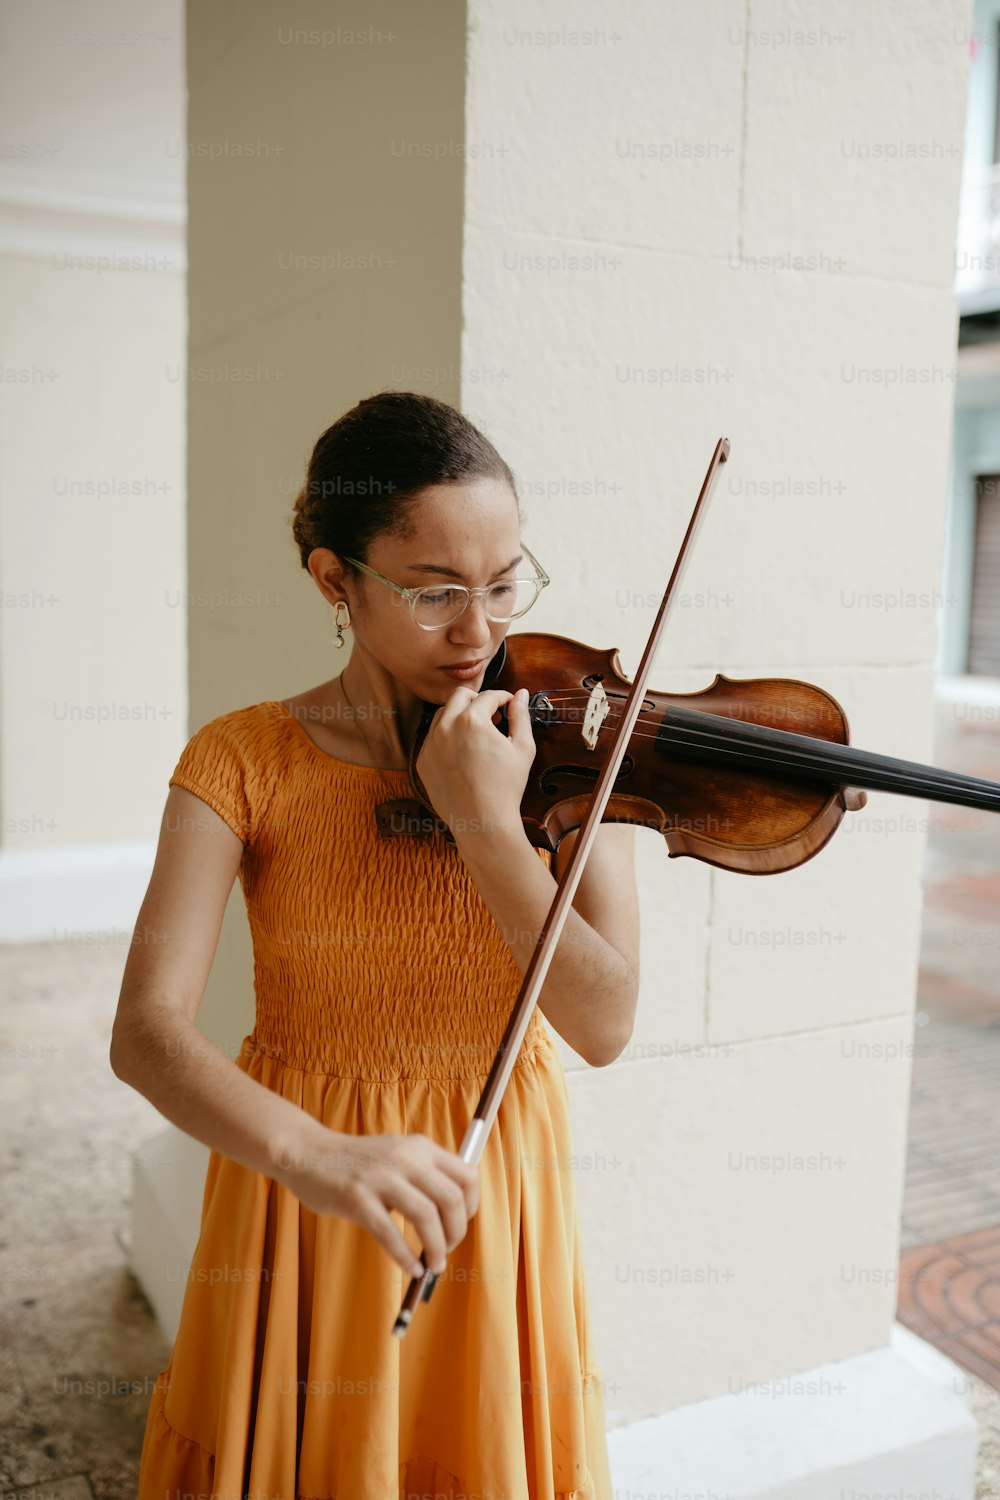 오렌지색 드레스를 입은 여성이 바이올린을 연주하고 있다